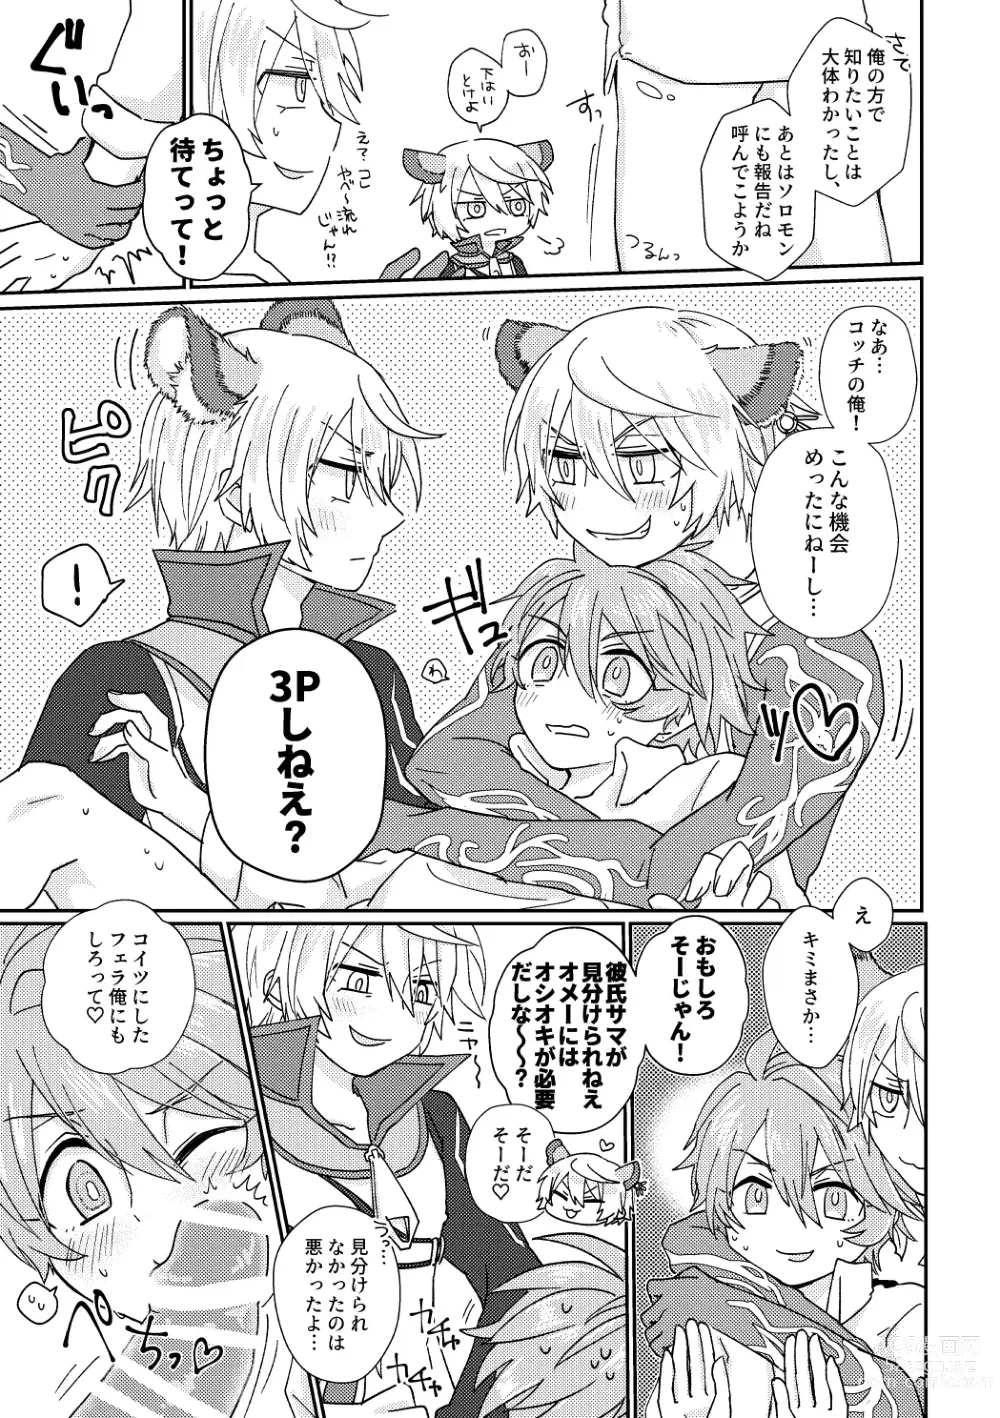 Page 10 of doujinshi Kagami 3P Hon Flauros x Andras with Akuma no Kagami